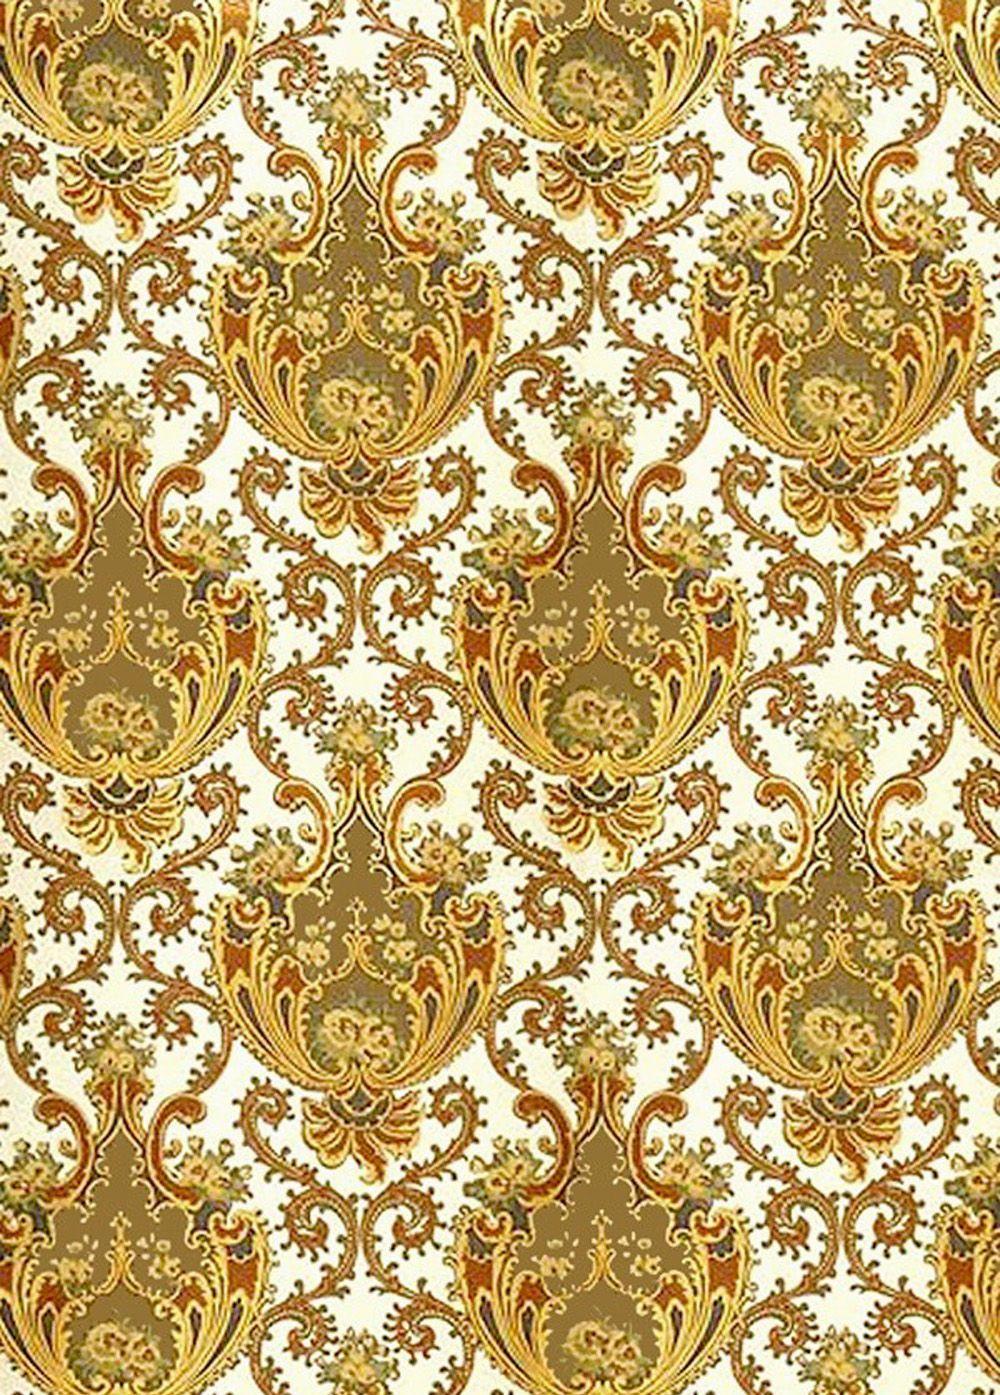 Victorian wallpaper. Fone for decoupage. Rococo